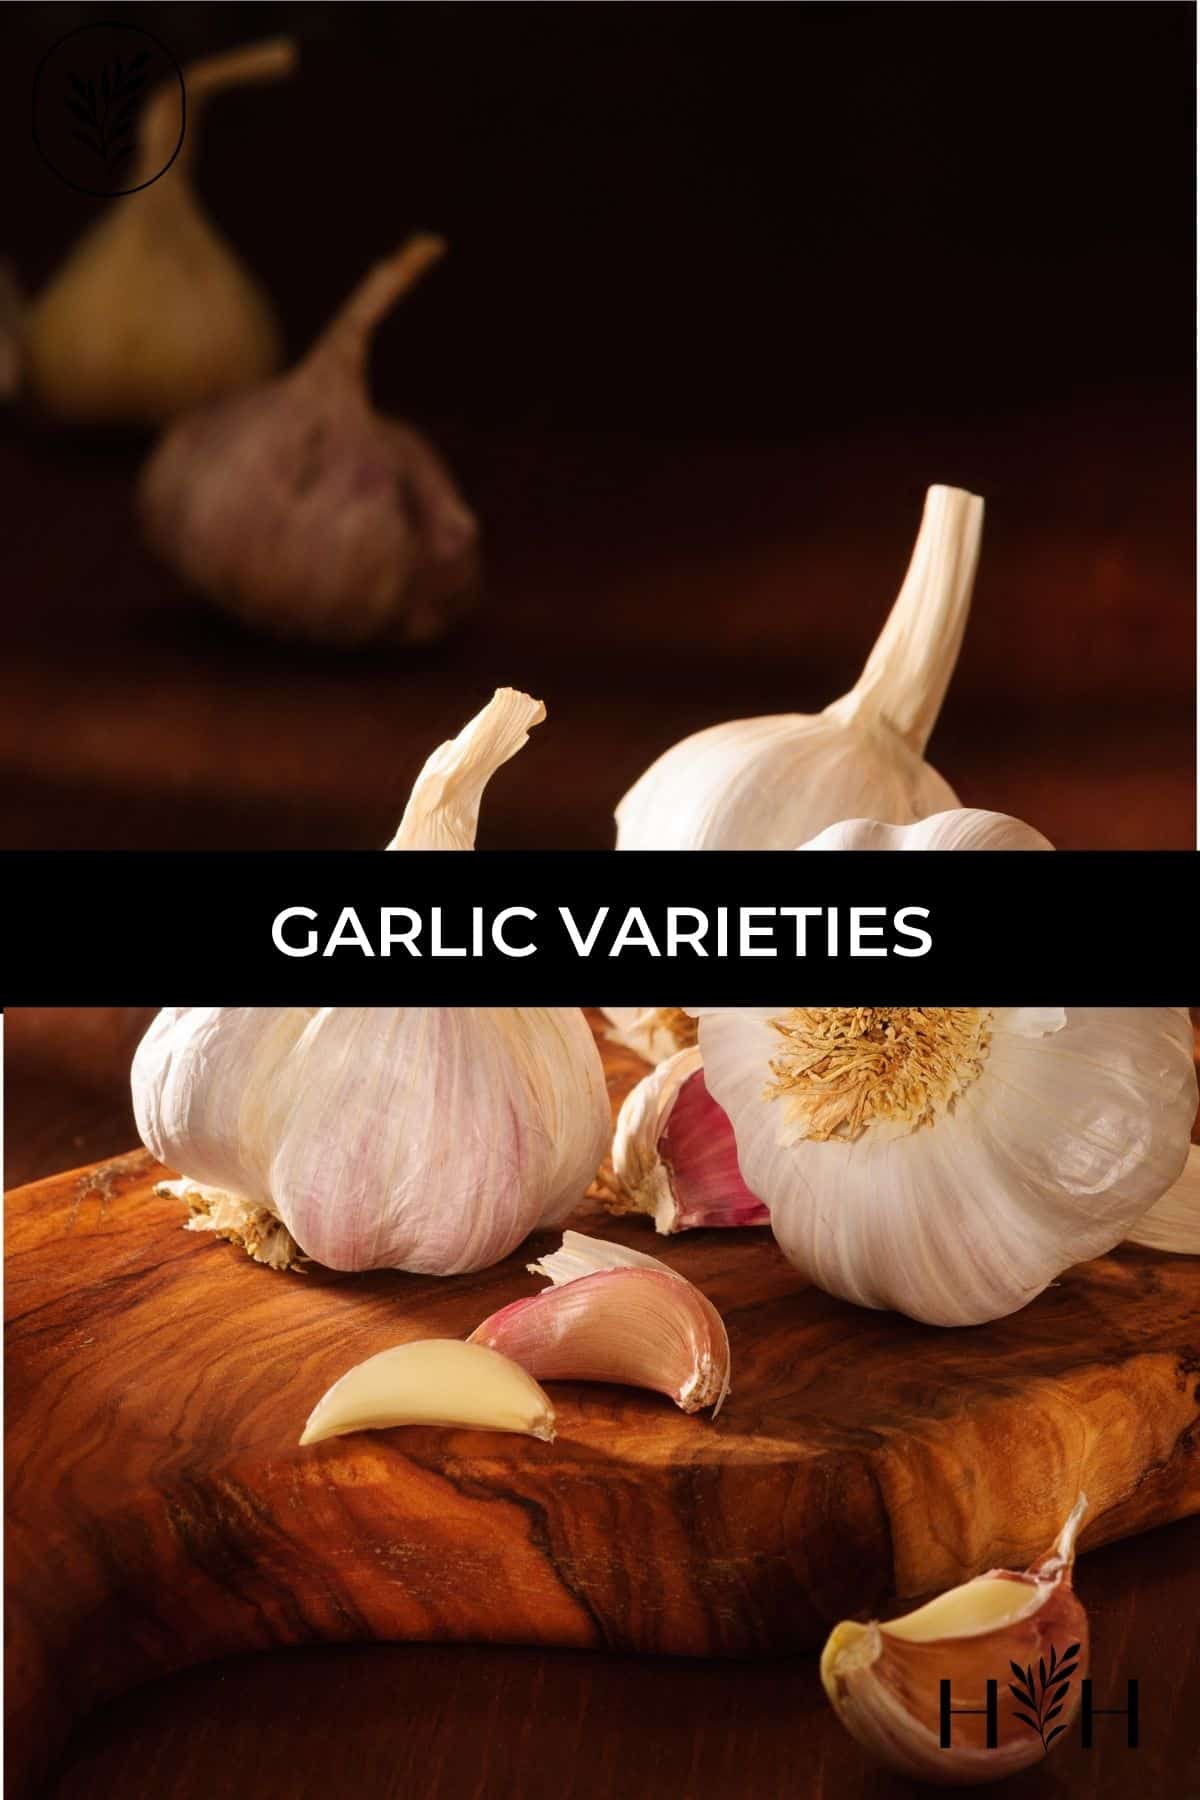 Garlic varieties via @home4theharvest